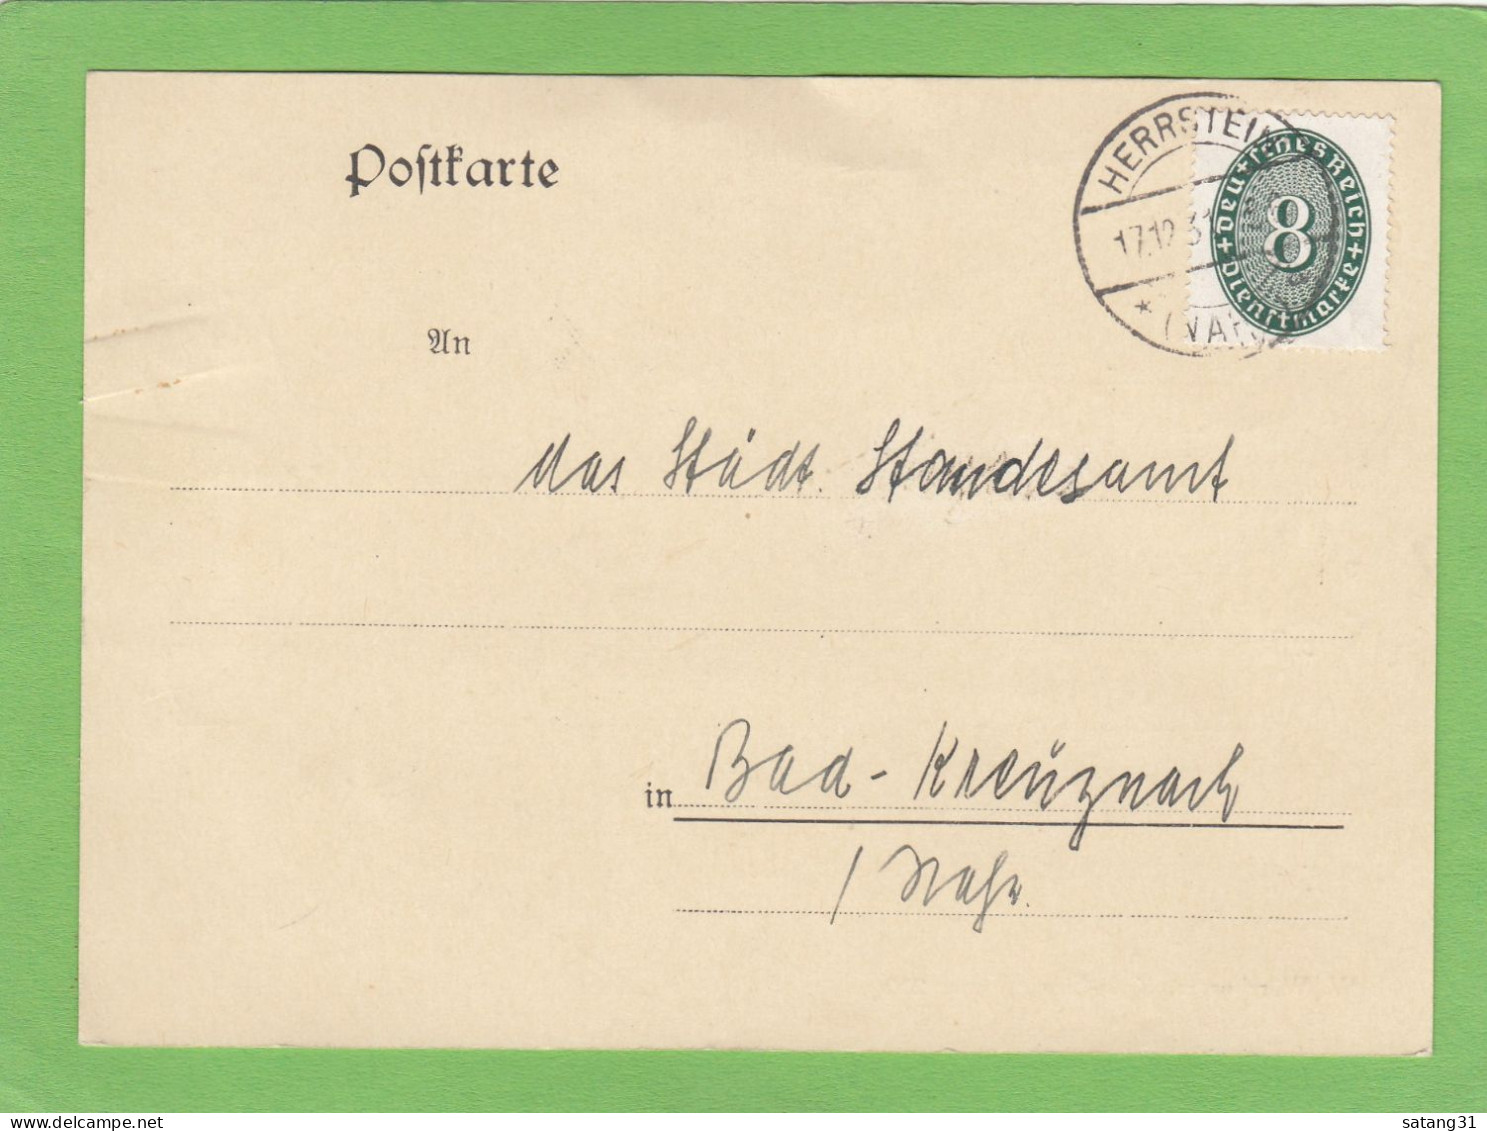 DIE POLIZEIVERWALTUNG/DER BÜGERMEISTER AUS HERRTSTEIN.POSTKARTE NACH BAD KREUZNACH,1931. - Officials